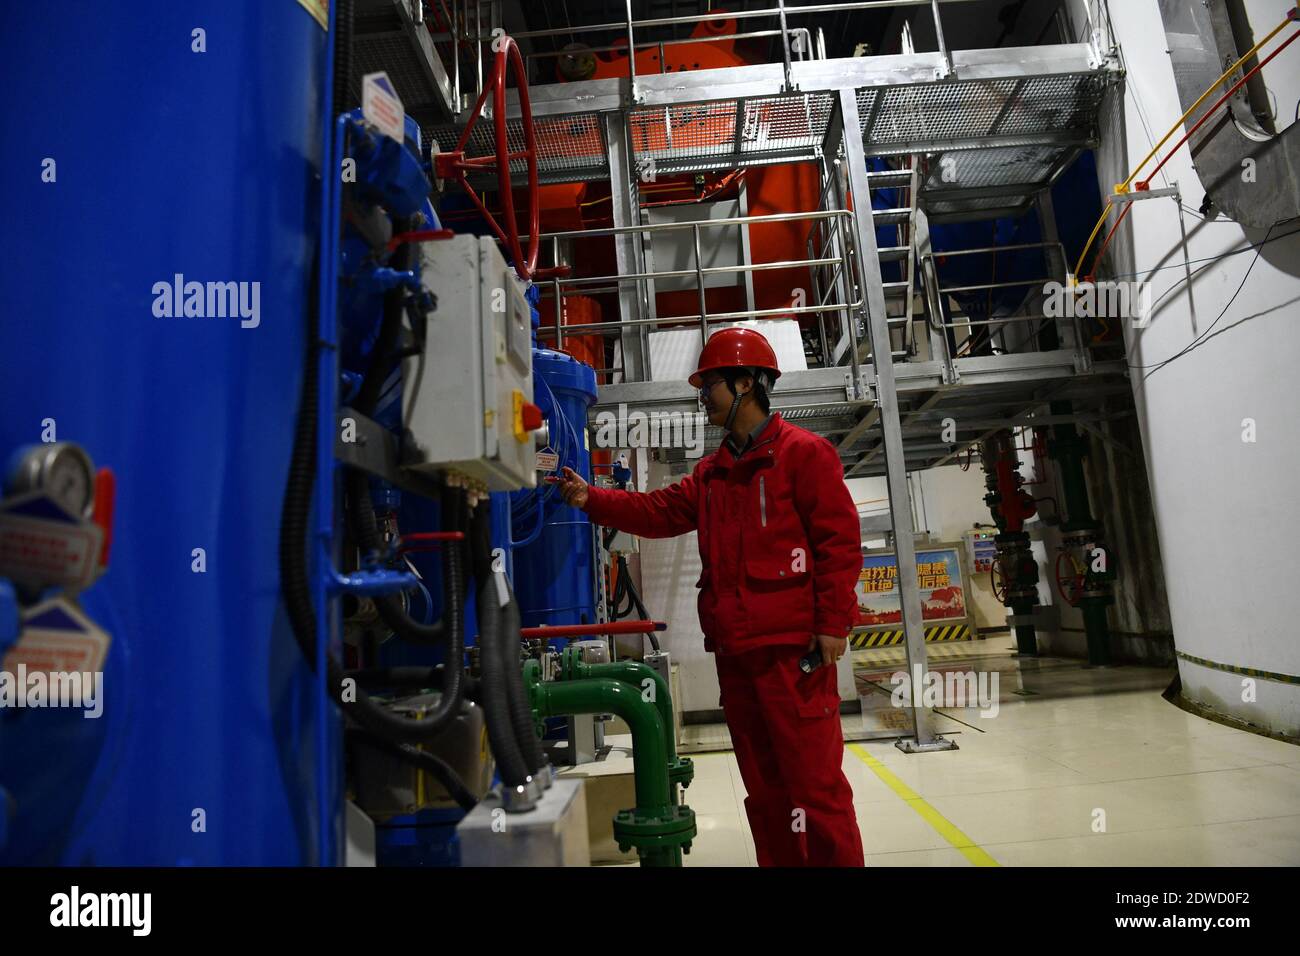 L'ultima unità a turbina della centrale di stoccaggio a pompaggio Jixi è collegata alla rete elettrica per la generazione di energia, il che indica che il più grande numero di pum della Cina Foto Stock